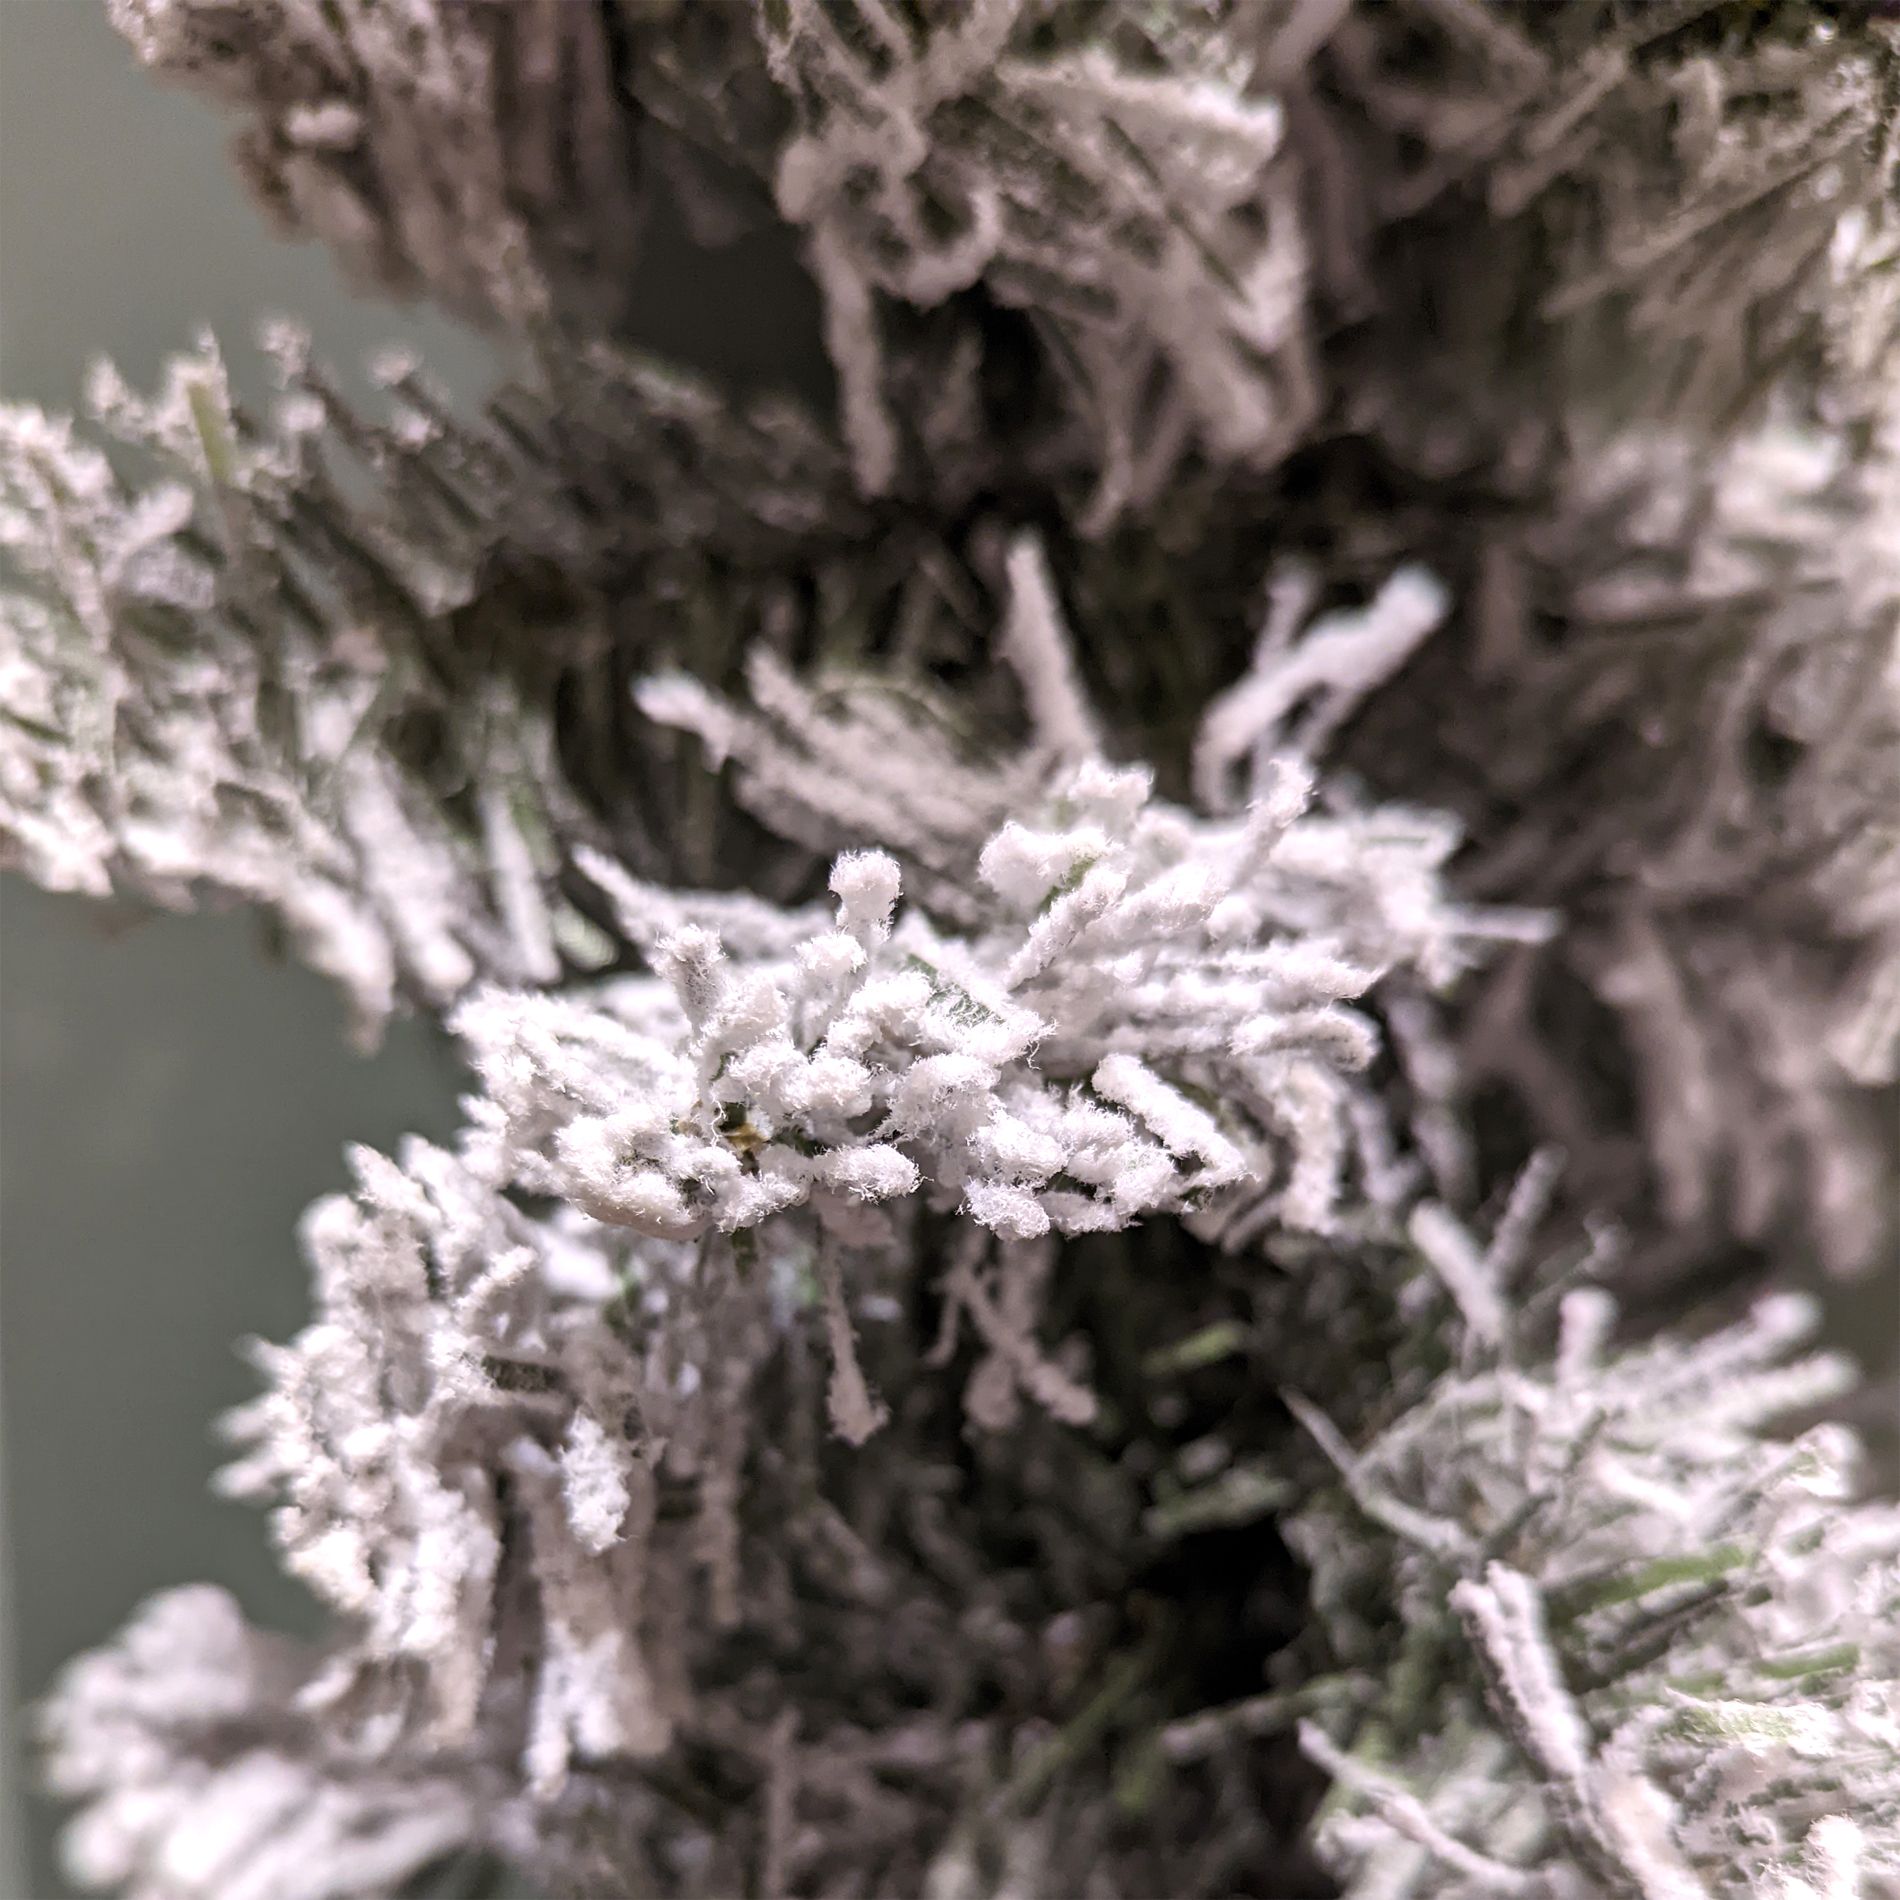 Guirlande enneigée Blooming 270 cm - Couronne et branche - Eminza